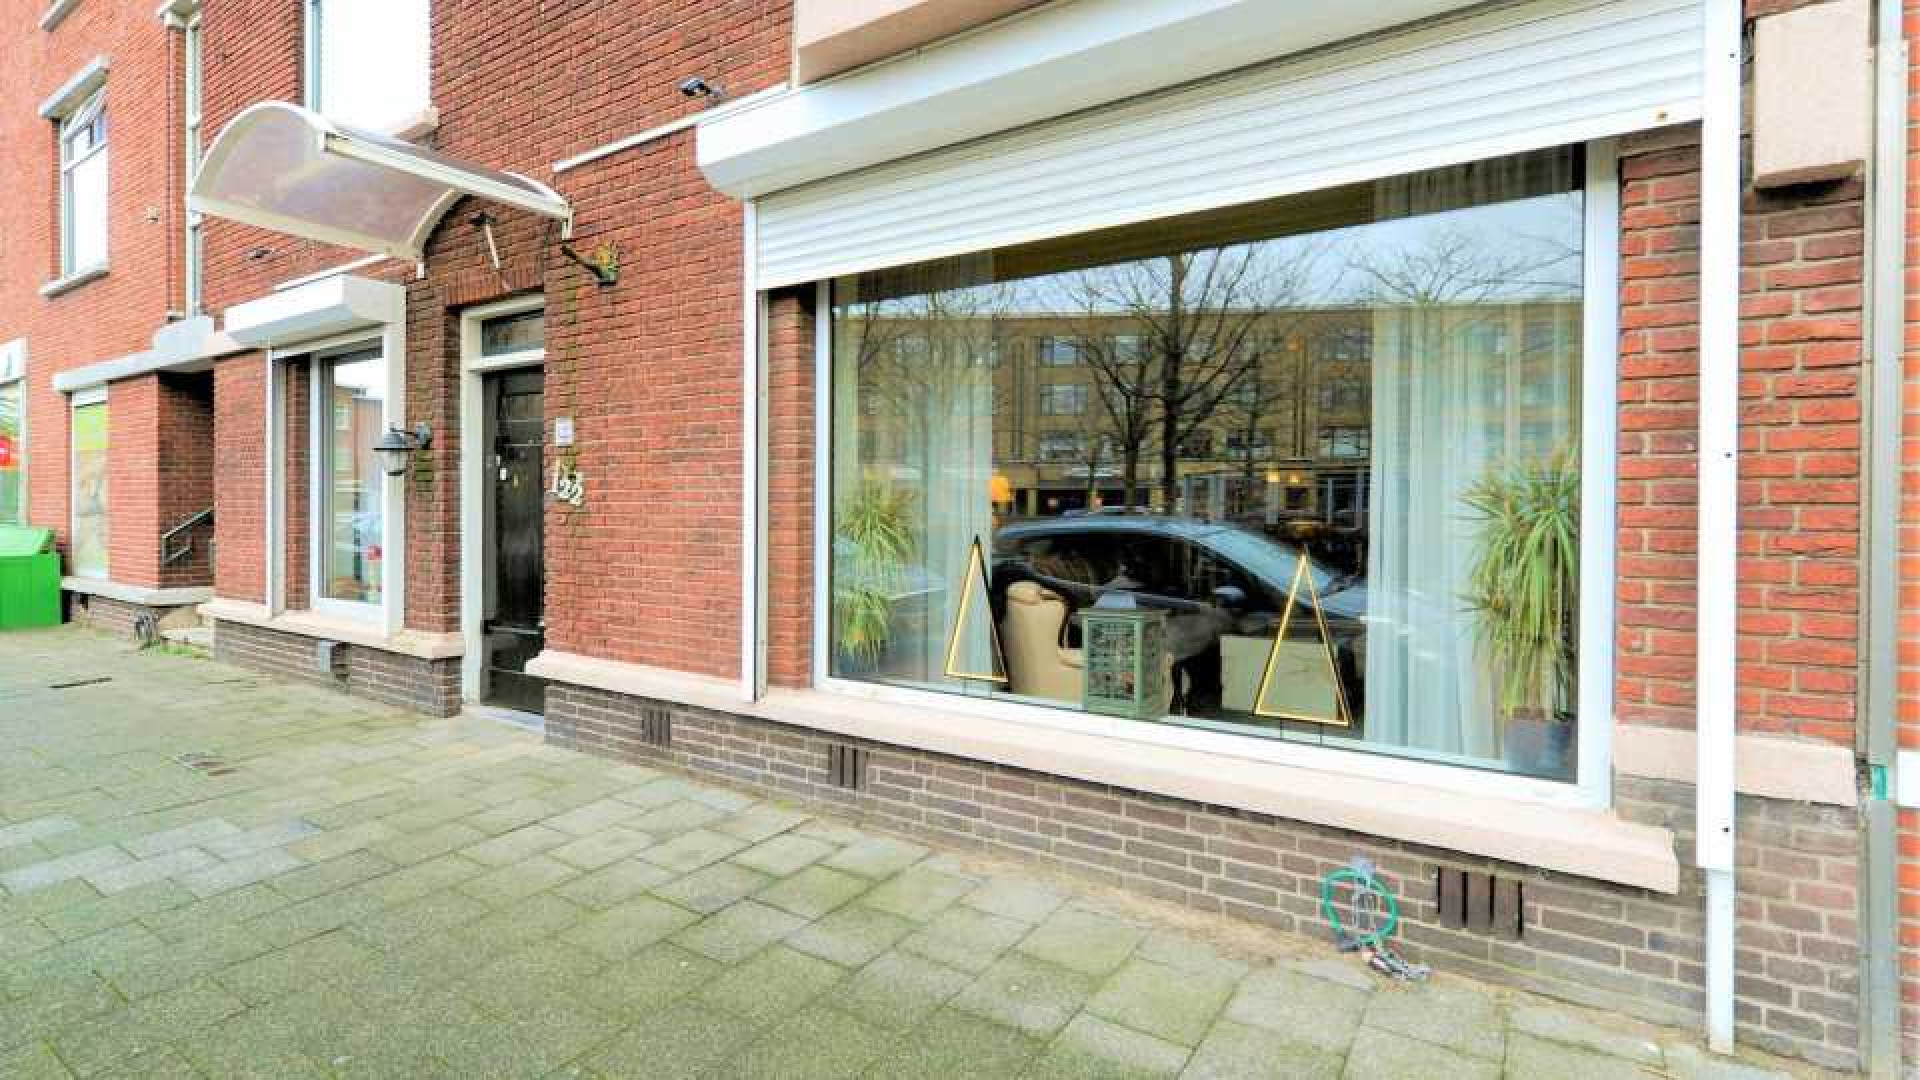 Binnenkijken in de recent gekochte Haagse woning van Bibi Breijman. Zie foto's